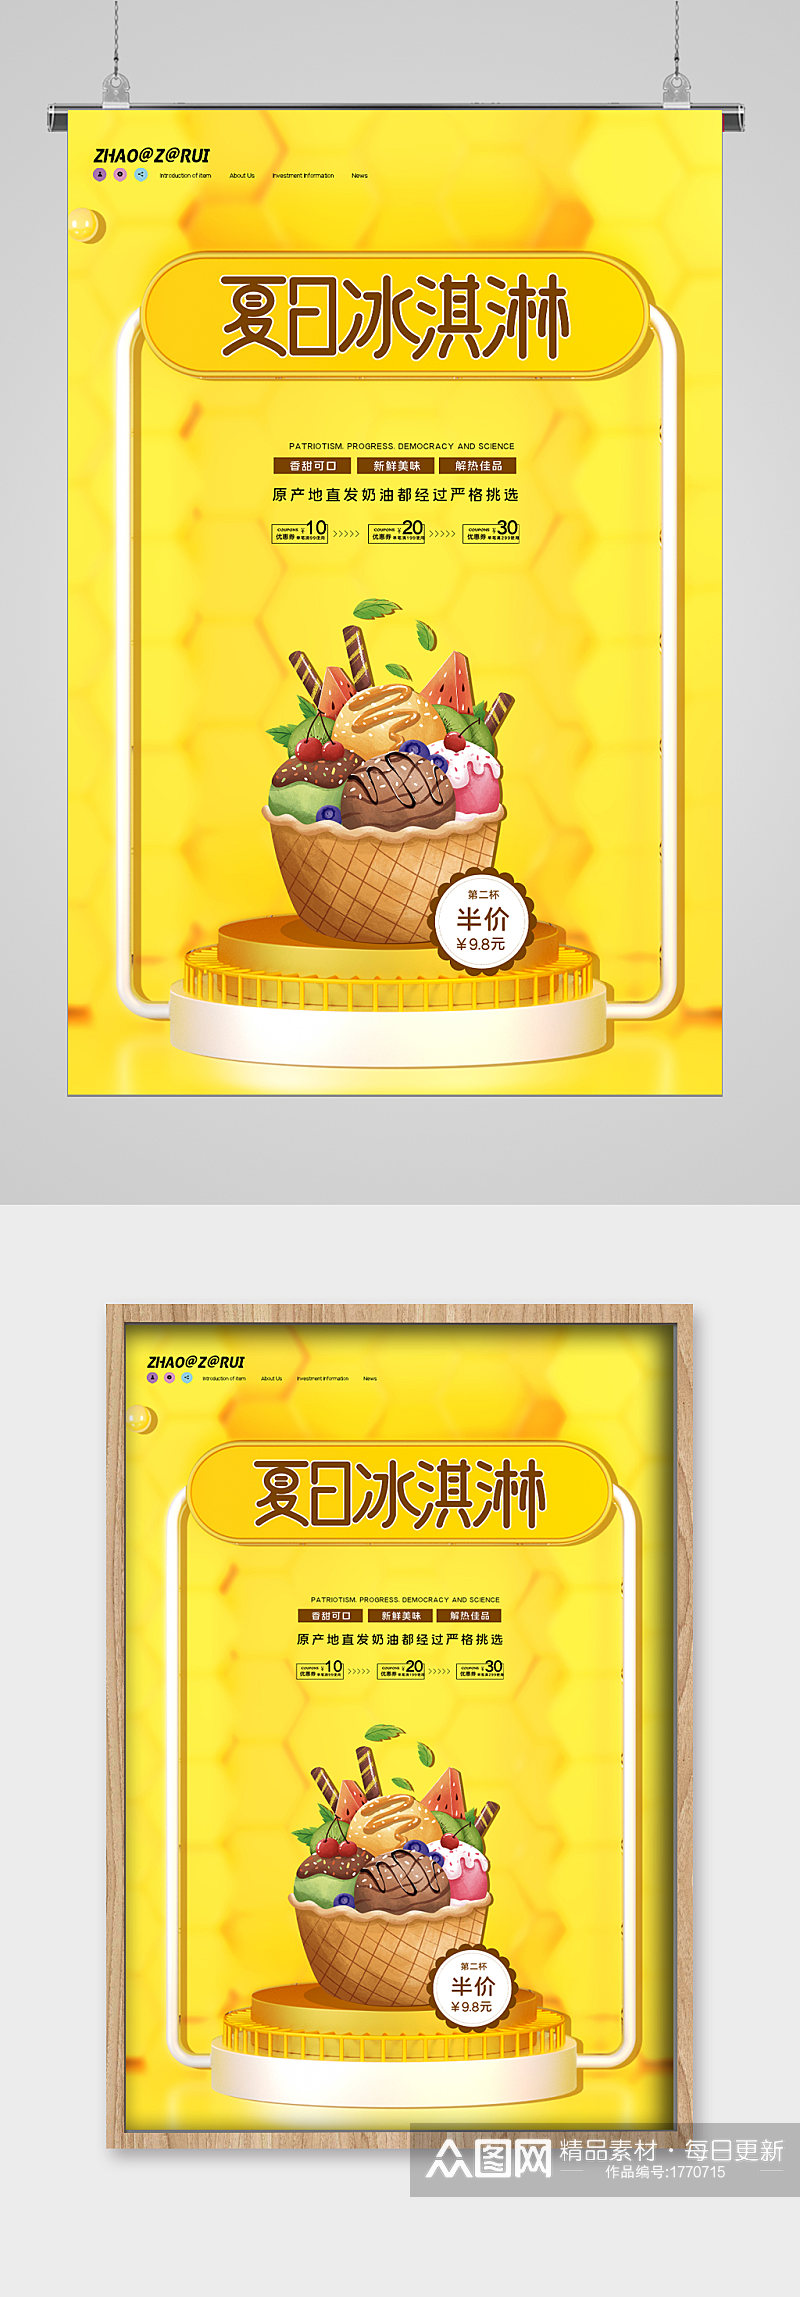 黄色背景清爽夏日冰淇淋海报素材